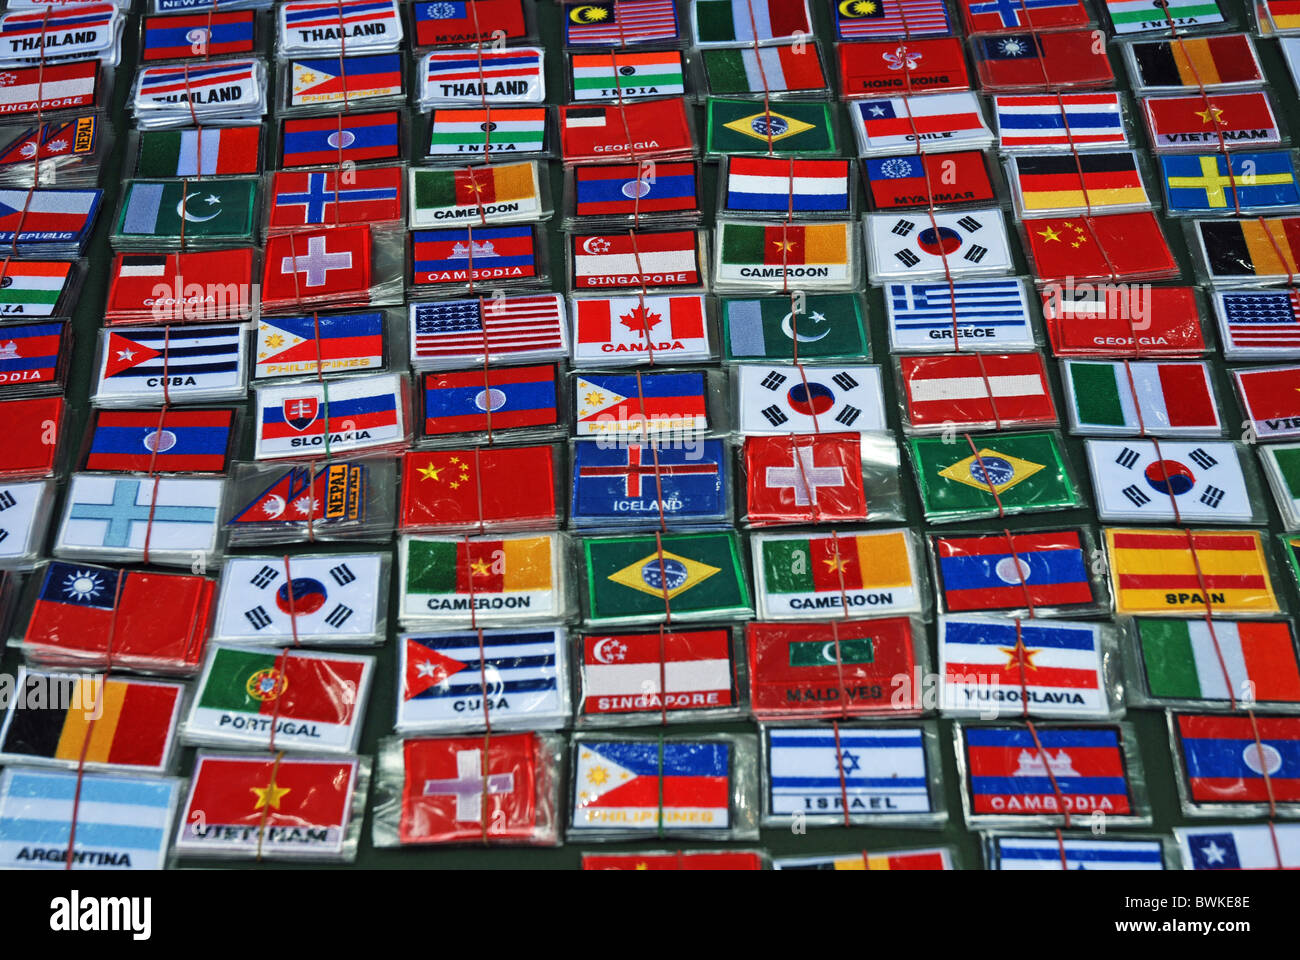 Asie Aufnaher broderie Broderie pays nations membres drapeaux drapeaux bannières bannière Bangkok géograph Banque D'Images